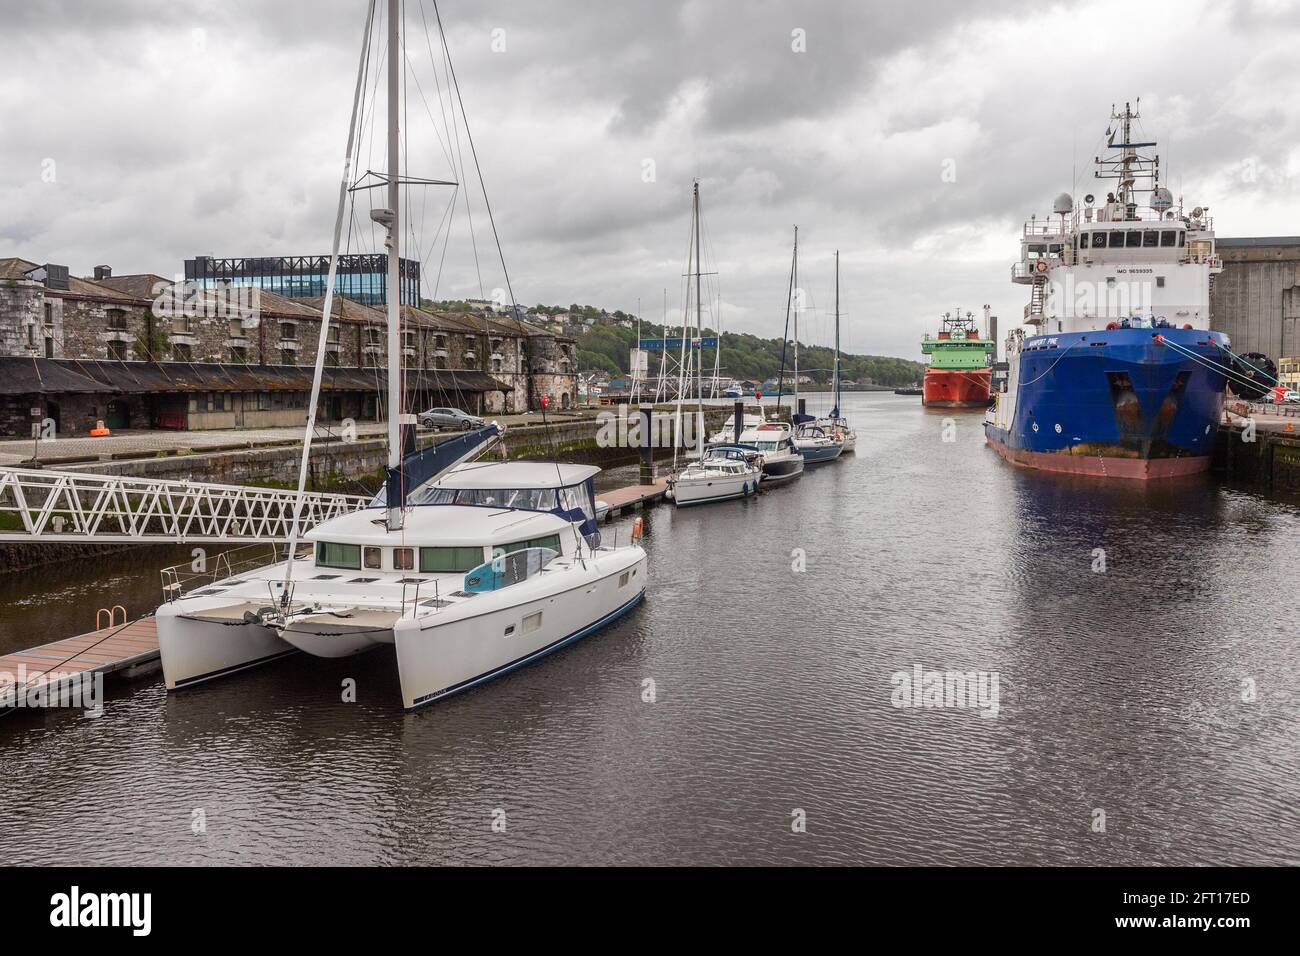 Cork, Irlanda. 21st de mayo de 2021. El puerto de Cork estaba ocupado esta mañana con yates de placer y barcos a motor amarrados en el puerto deportivo, así como barcos de pesca y barcos mercantes. Crédito: AG News/Alamy Live News Foto de stock